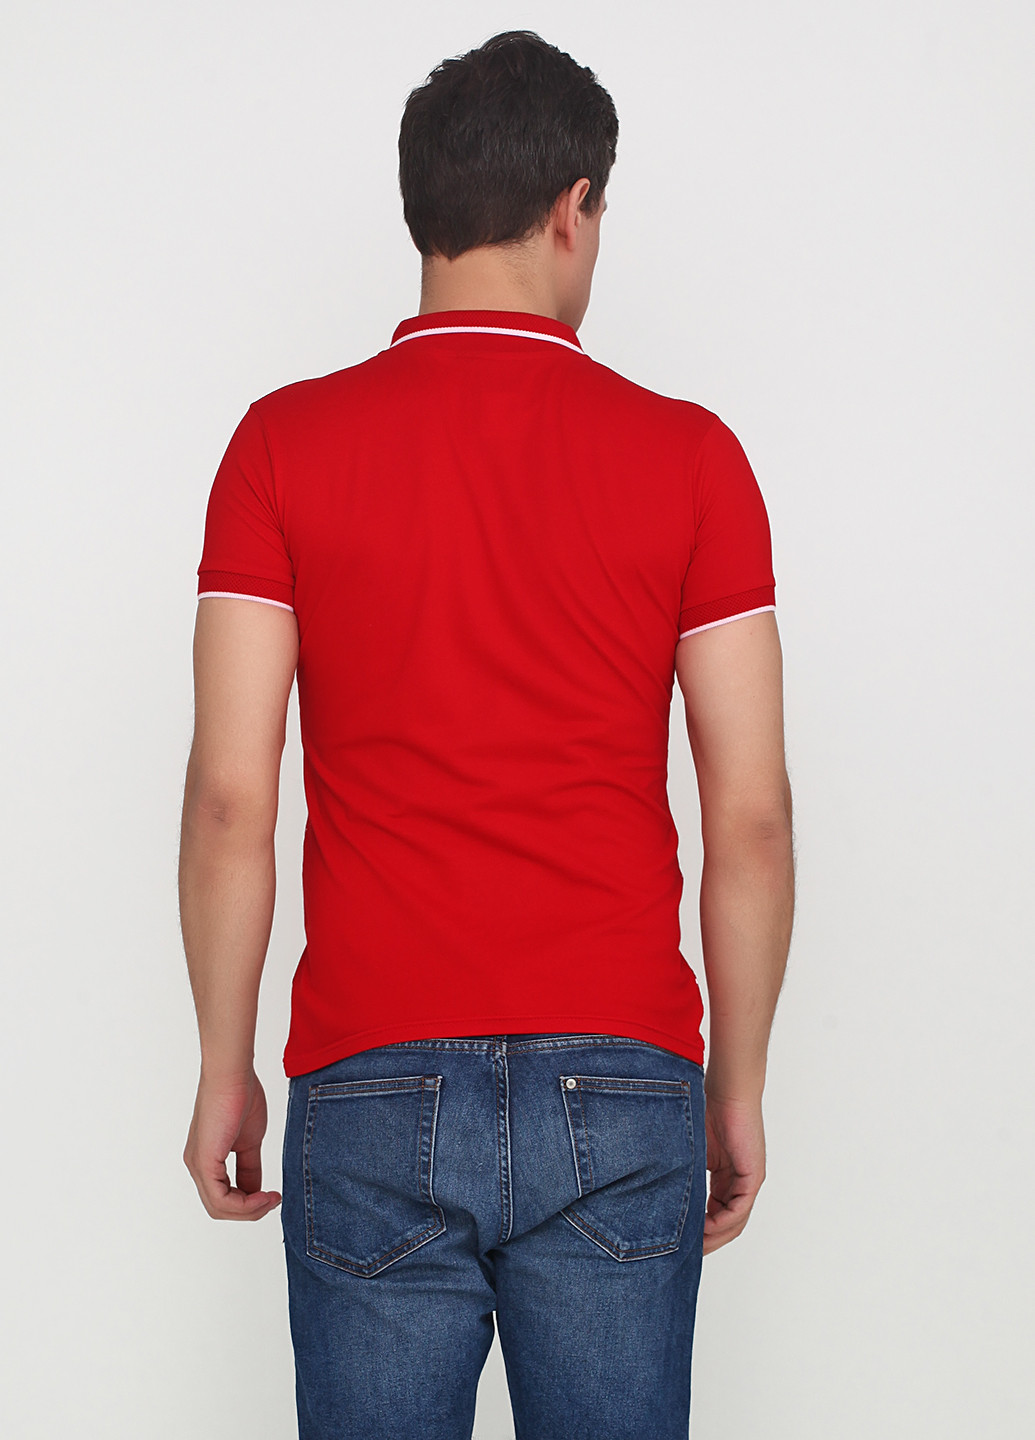 Красная футболка-поло для мужчин EL & KEN в горошек